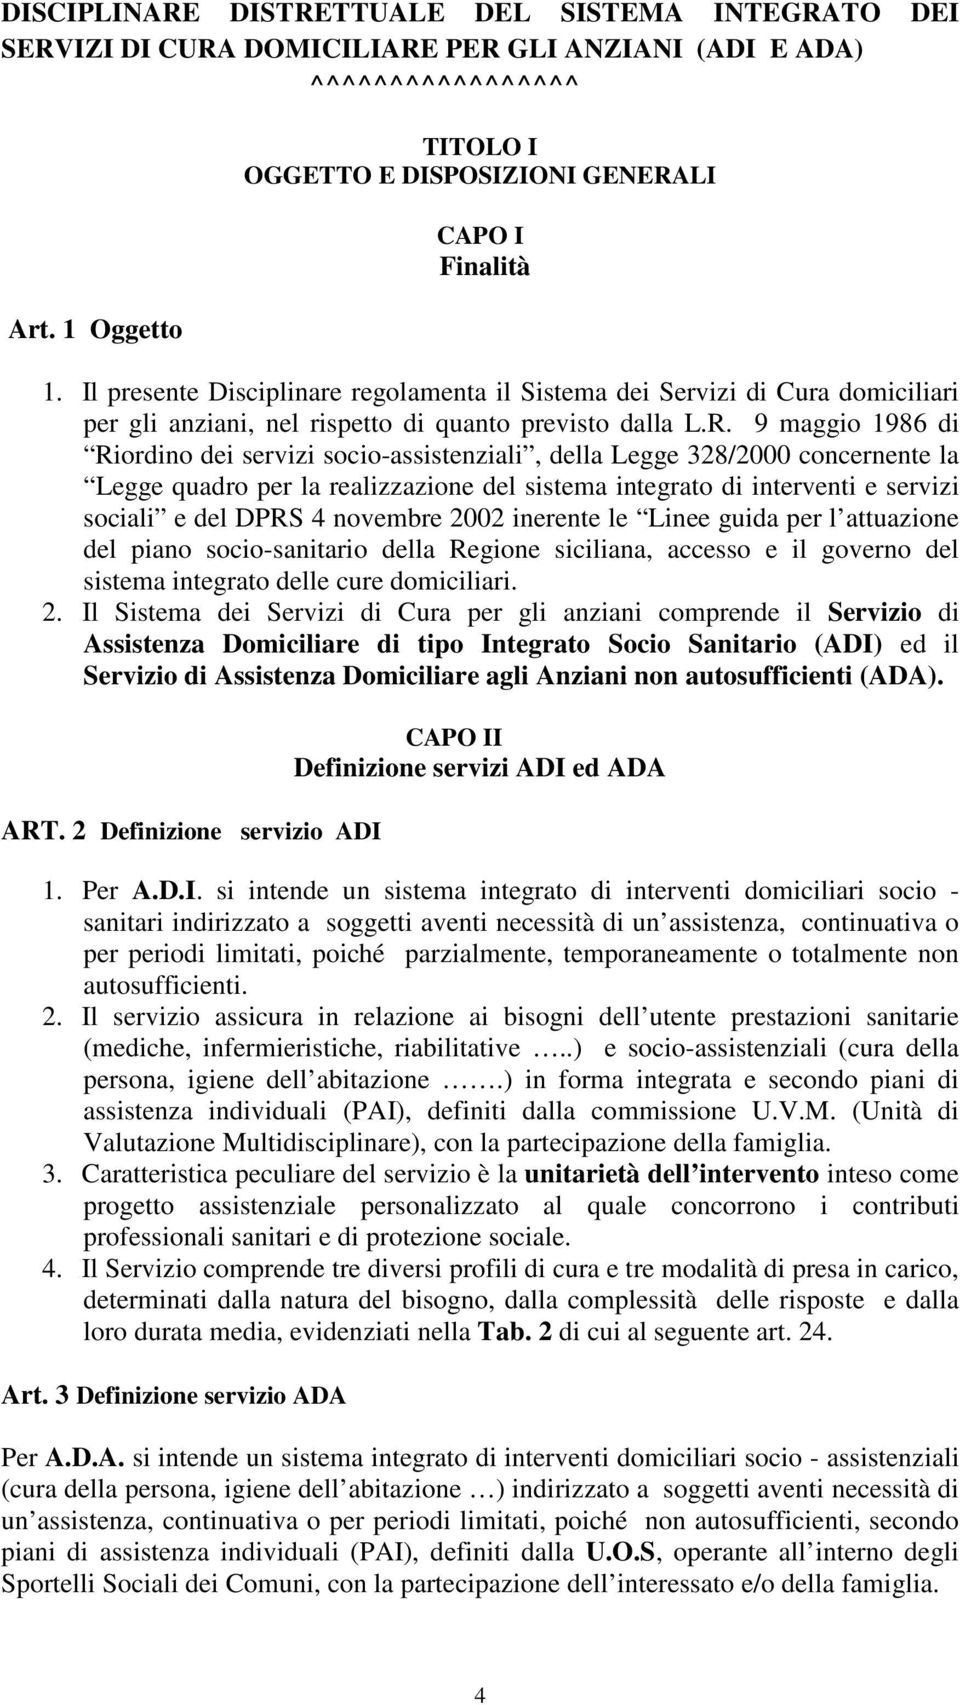 9 maggio 1986 di Riordino dei servizi socio-assistenziali, della Legge 328/2000 concernente la Legge quadro per la realizzazione del sistema integrato di interventi e servizi sociali e del DPRS 4